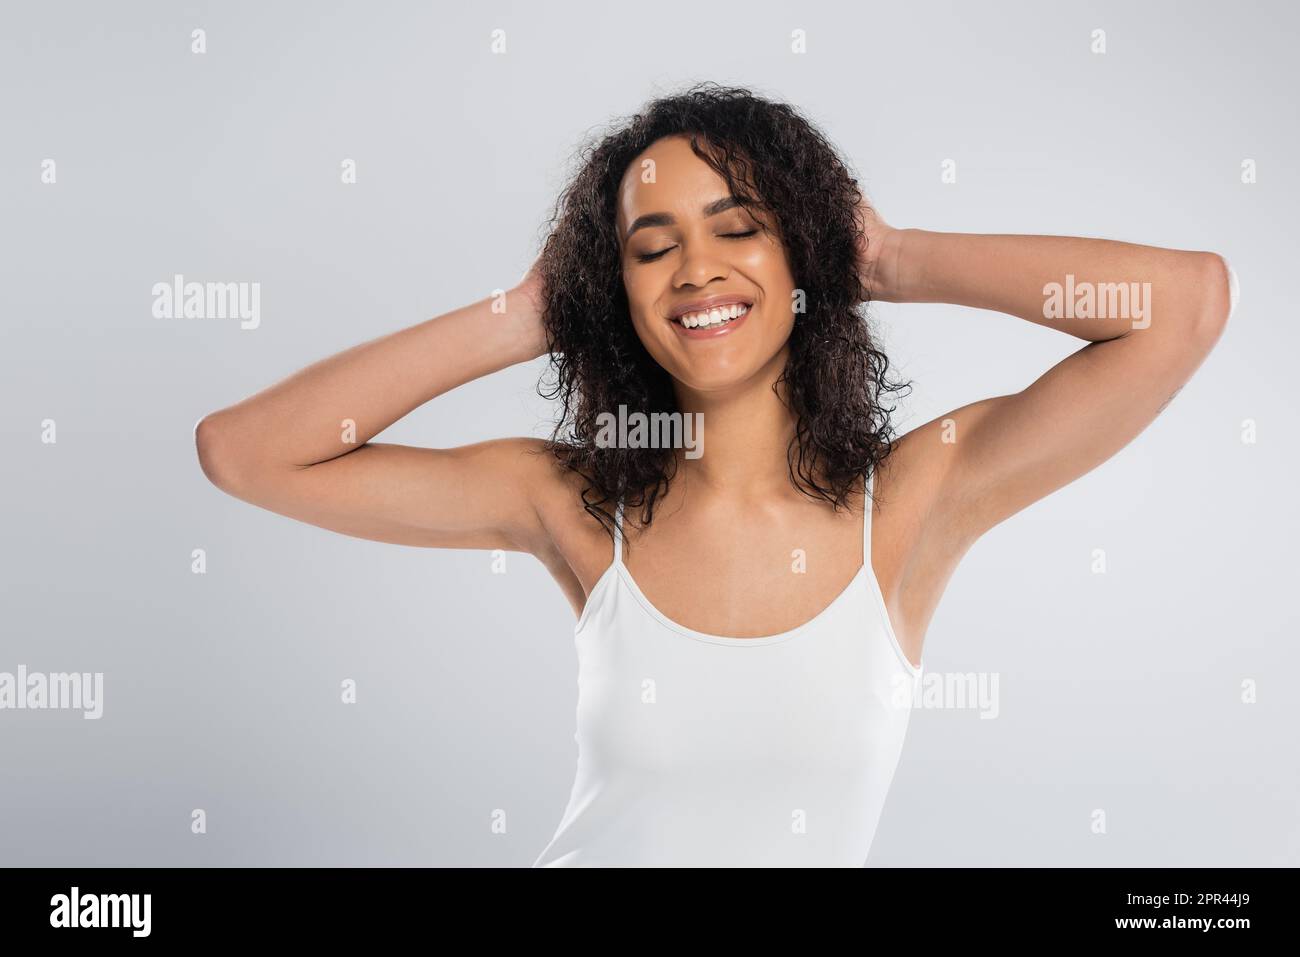 donna afro-americana spensierata in canotta bianca che tocca i capelli ondulati e sorridente con gli occhi chiusi isolato sul grigio, immagine stock Foto Stock